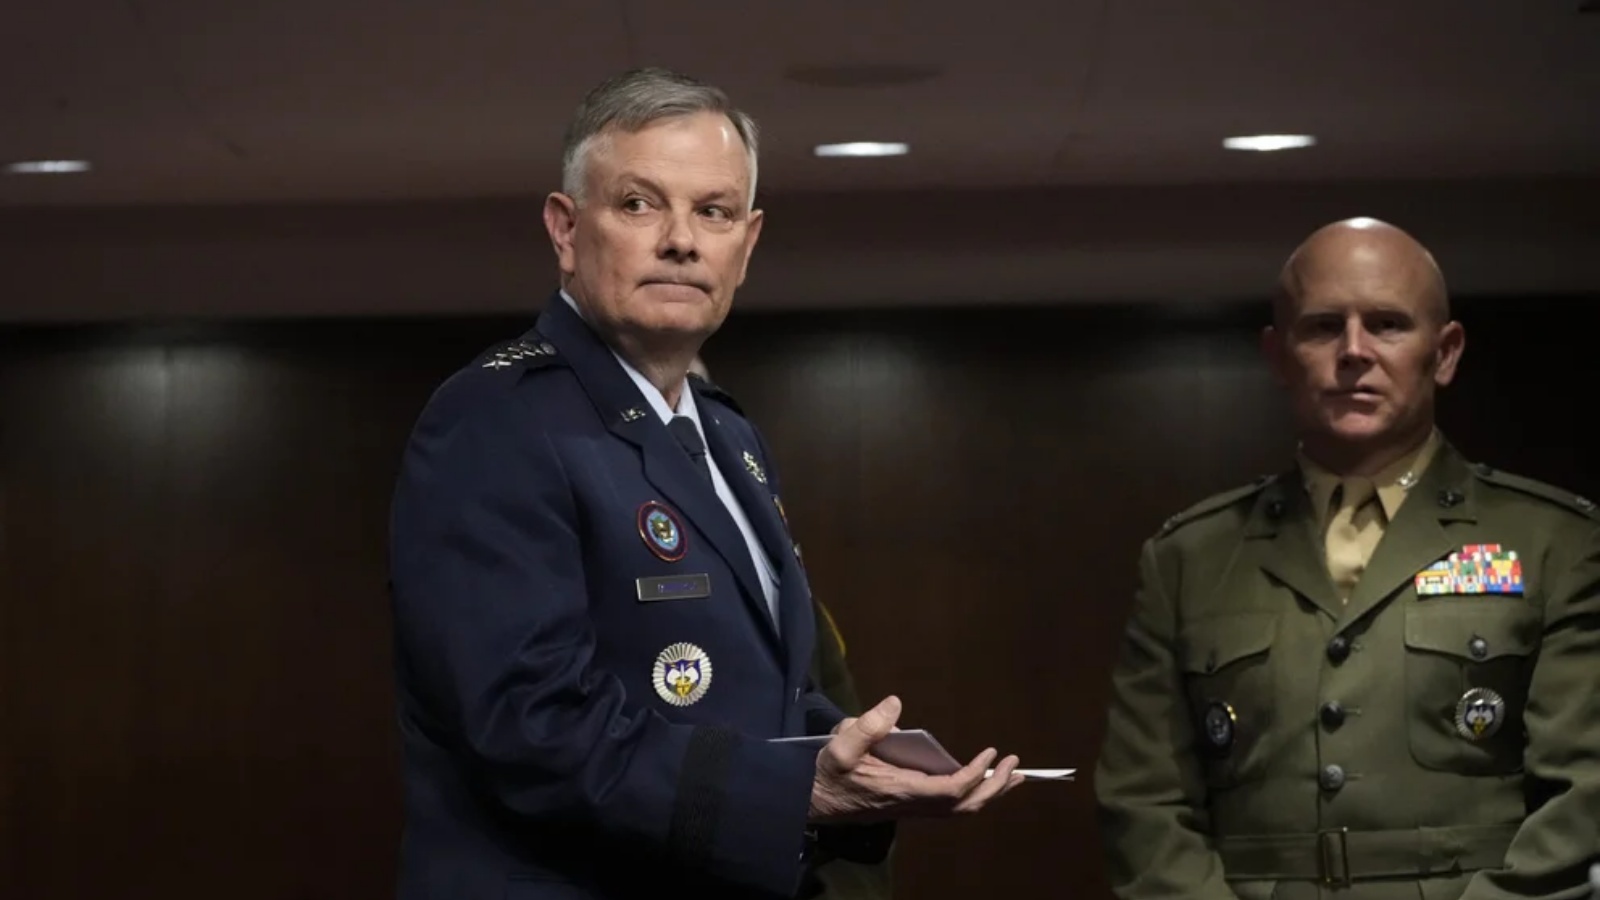 الجنرال غلين فانهيرك، قائد القيادة الشمالية الأميركية وقيادة الدفاع الجوي لأميركا الشمالية، يصل لحضور جلسة استماع للجنة القوات المسلحة بمجلس الشيوخ في الكابيتول هيل في 24 مارس 2022 في واشنطن العاصمة.